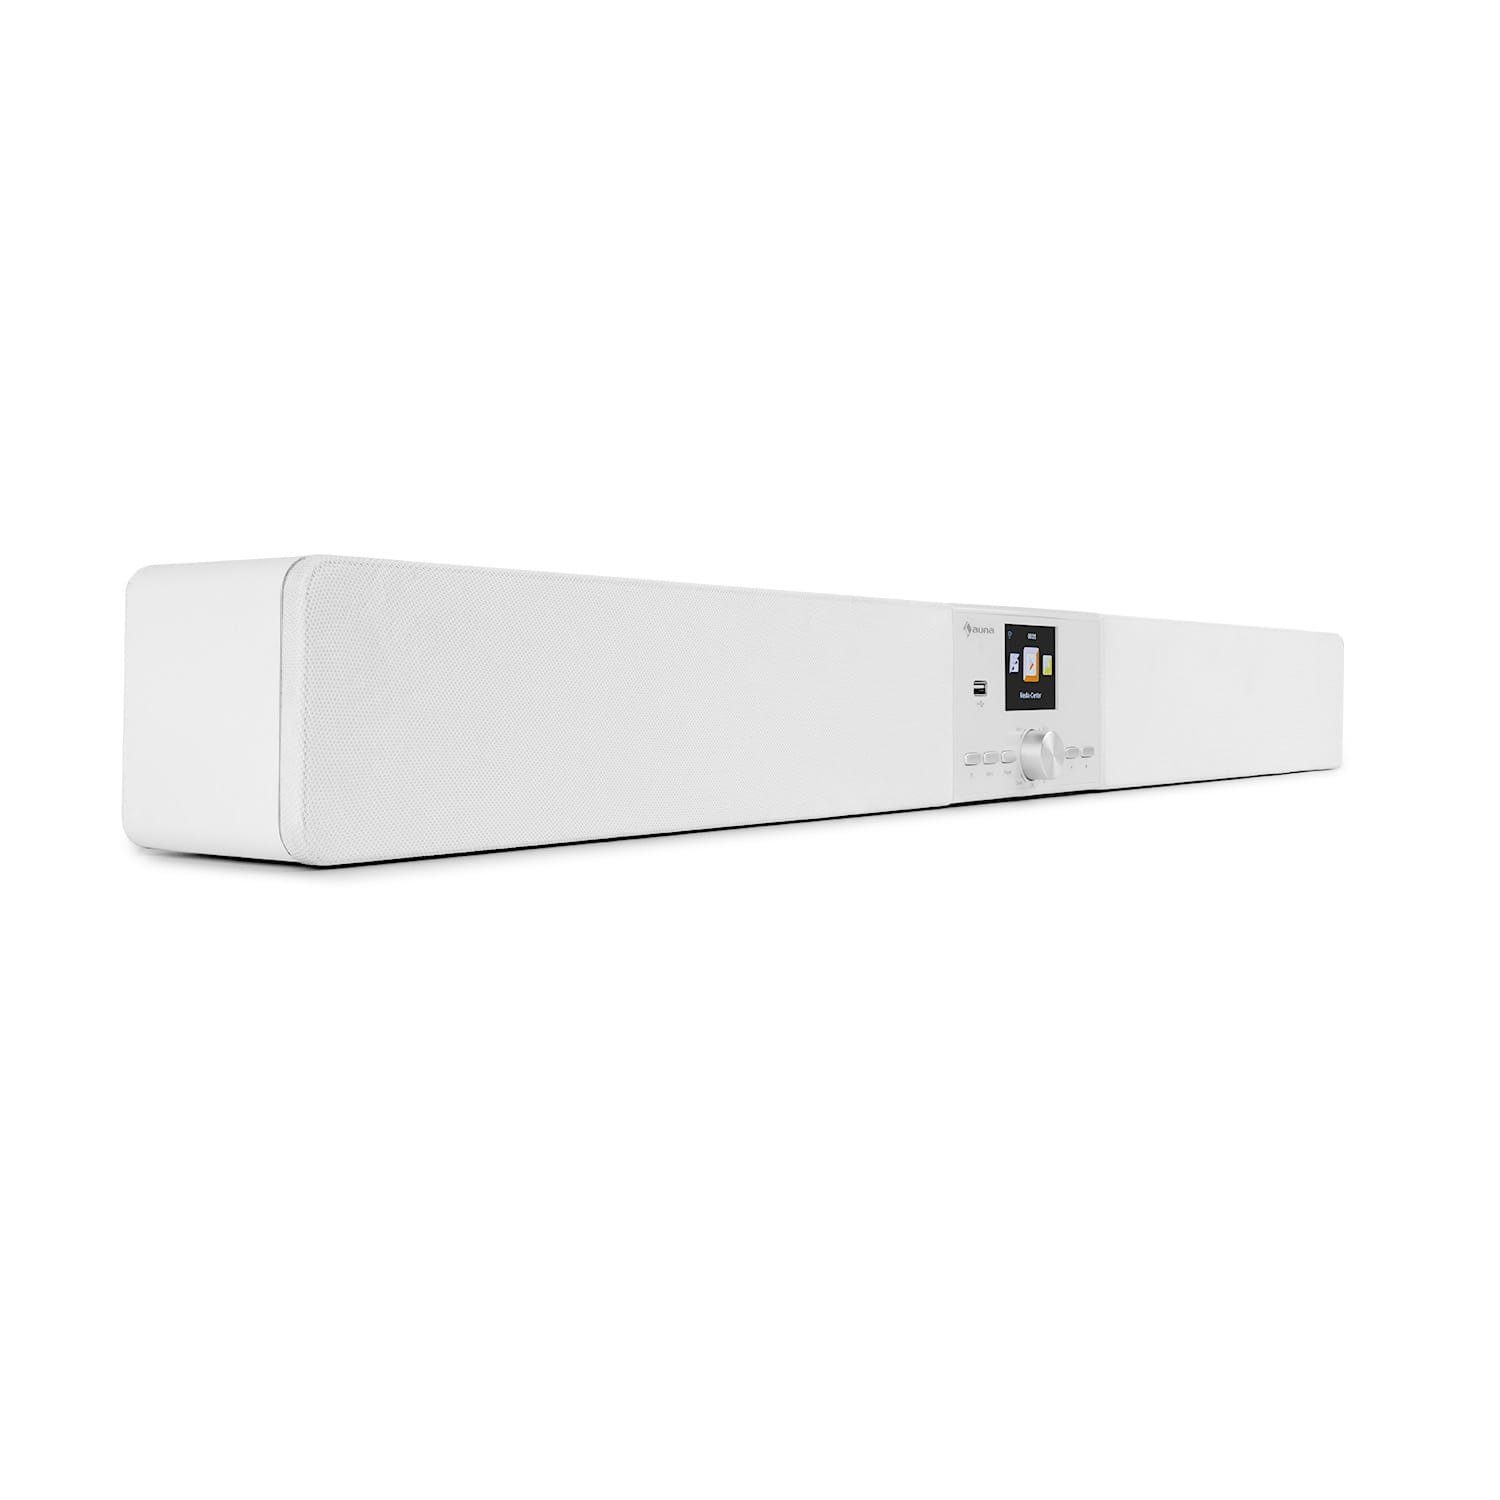 Auna auna Areal Bar Connect Soundbar Bluetooth Internet/DAB+/FM USB AUX  Soundbar (WLAN (WiFi) online kaufen | OTTO